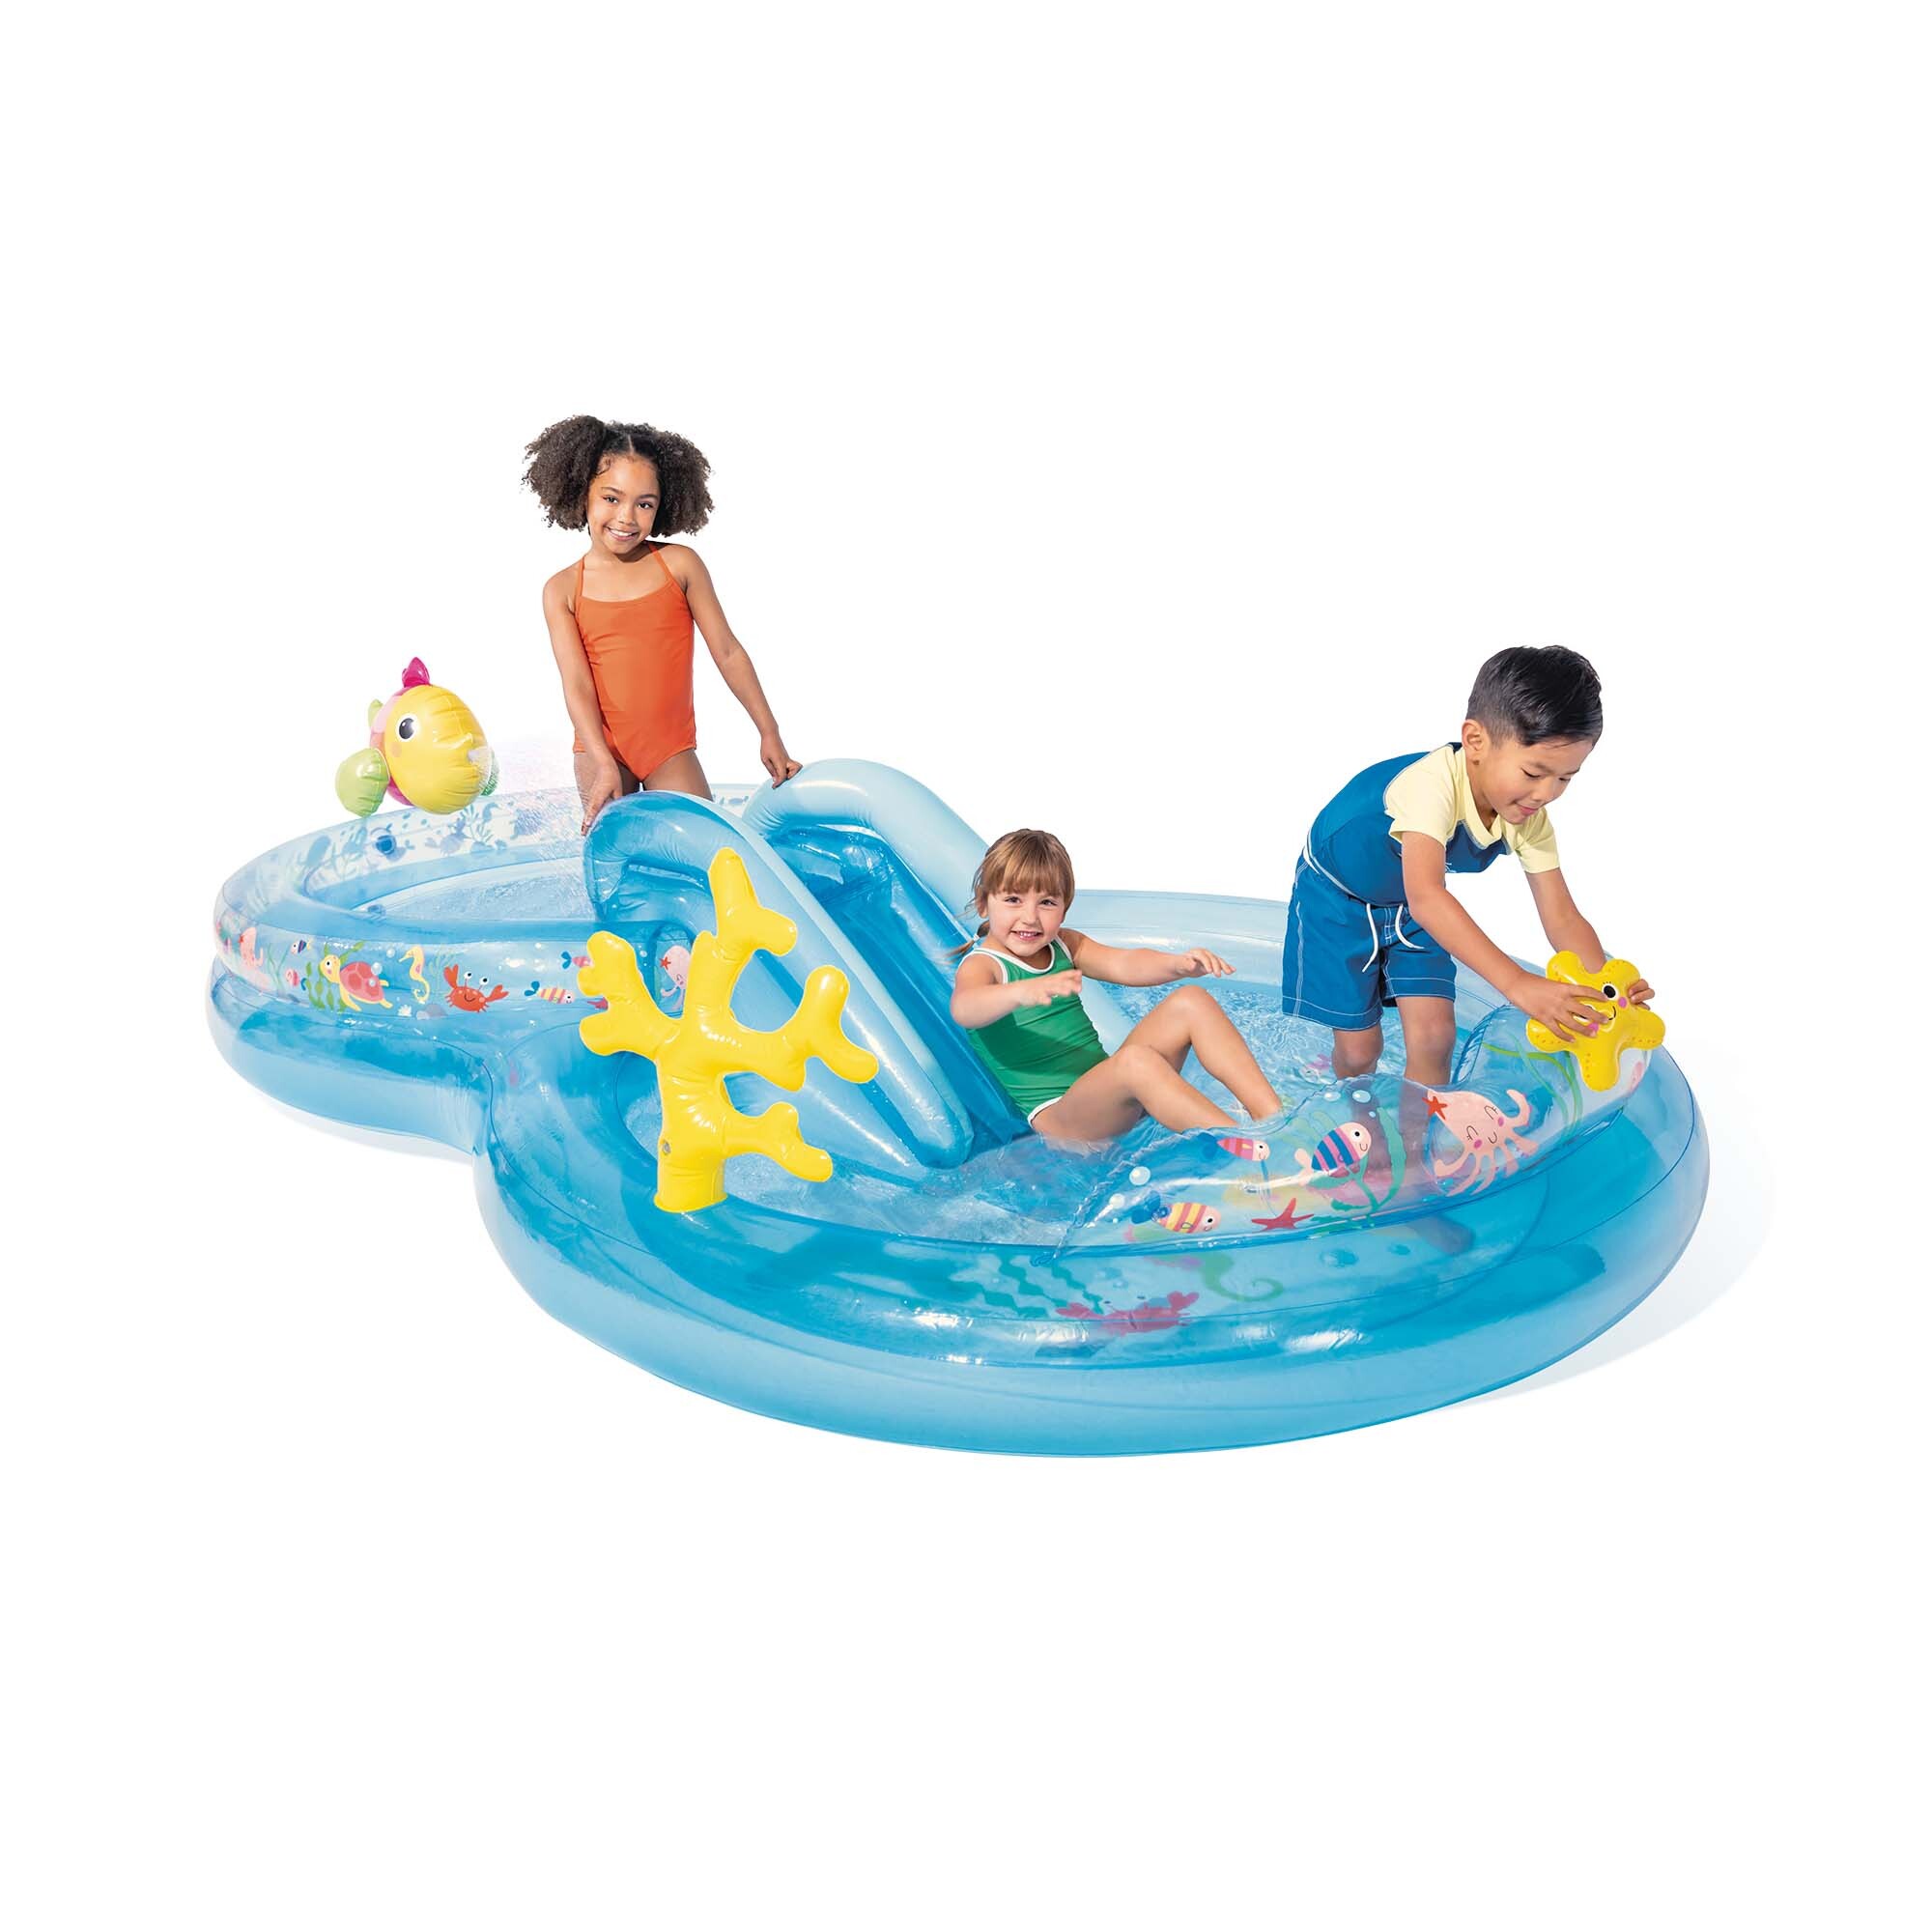 Intex - play center under the sea piscina gonfiabile, con palline, pvc, multicolore, 310x193x71 cm - INTEX